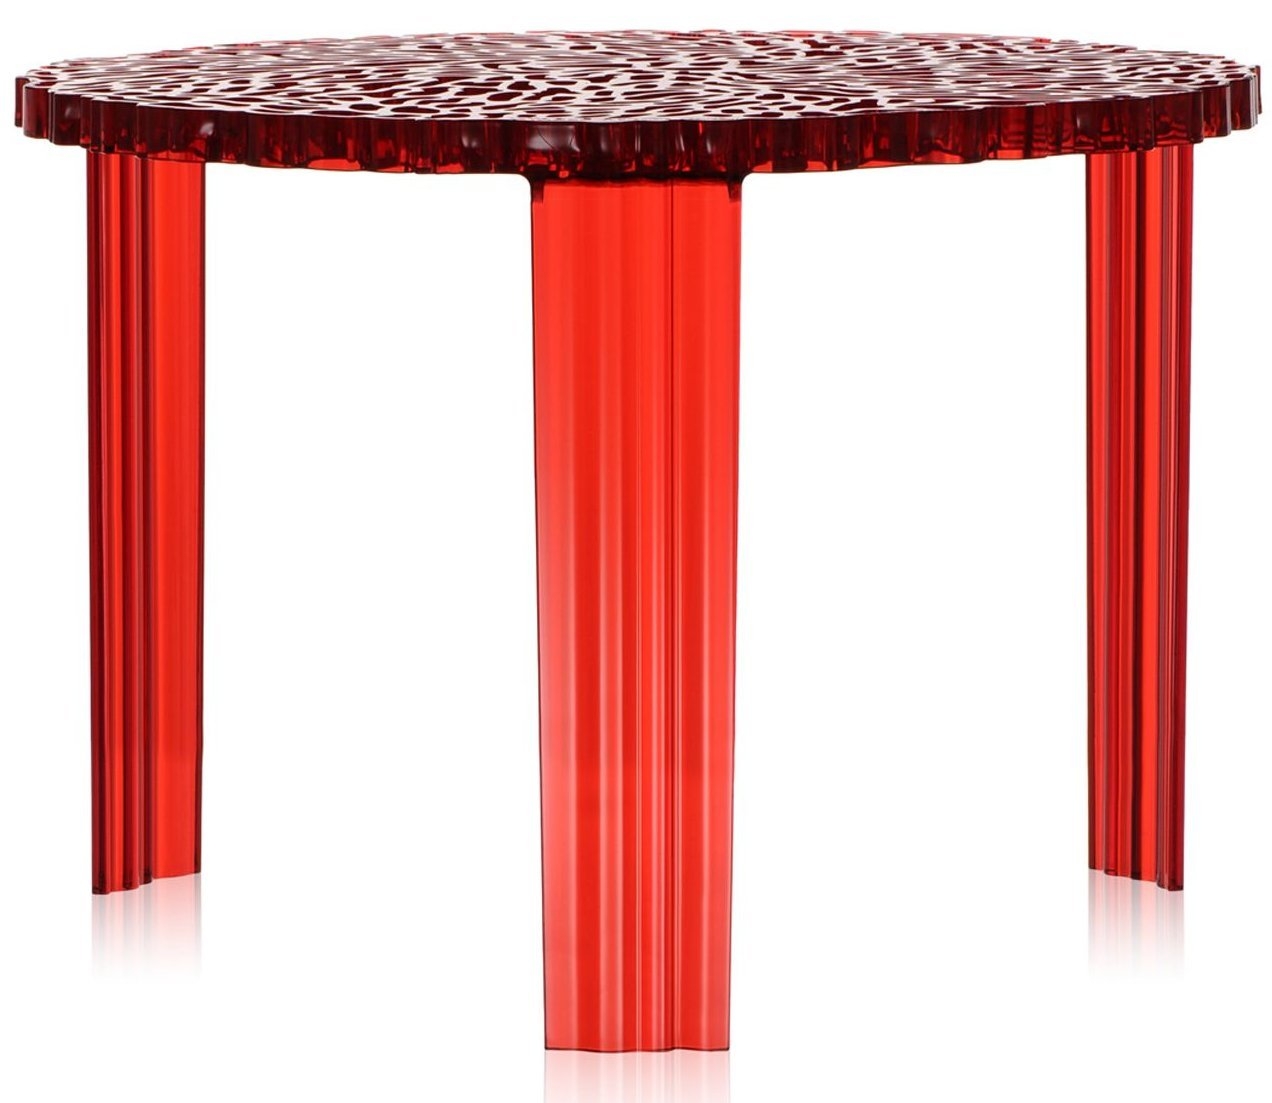 Masuta Kartell T-Table design Patricia Urquiola 50cm h 36cm rosu transparent Kartell pret redus imagine 2022